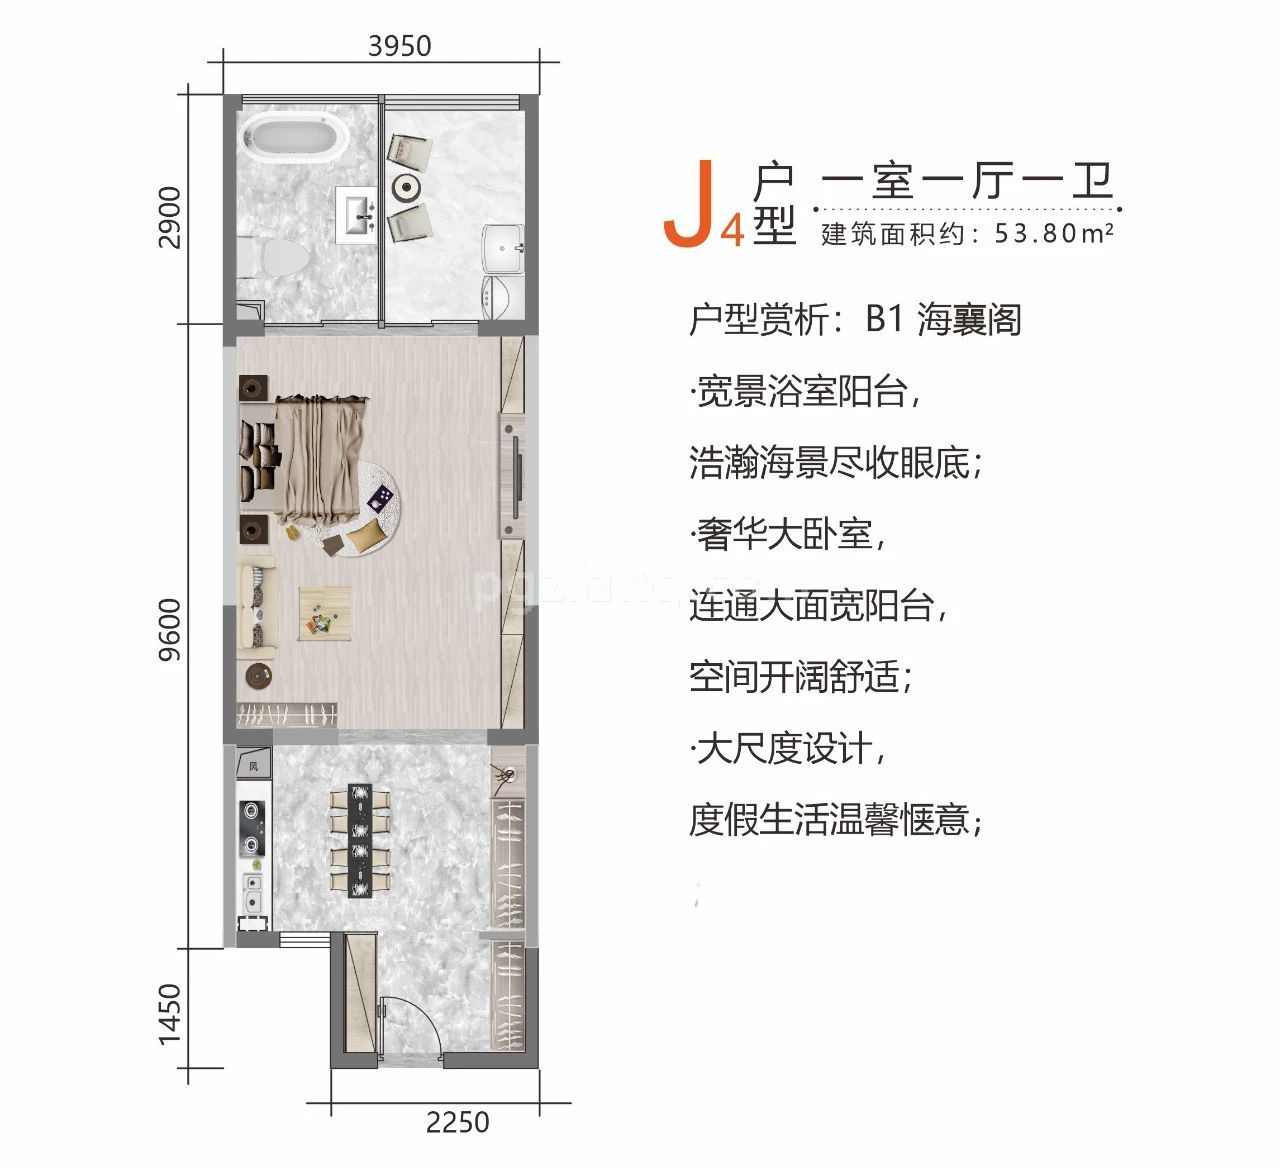 高层 J4户型 一室一厅一卫 建筑面积53.8㎡